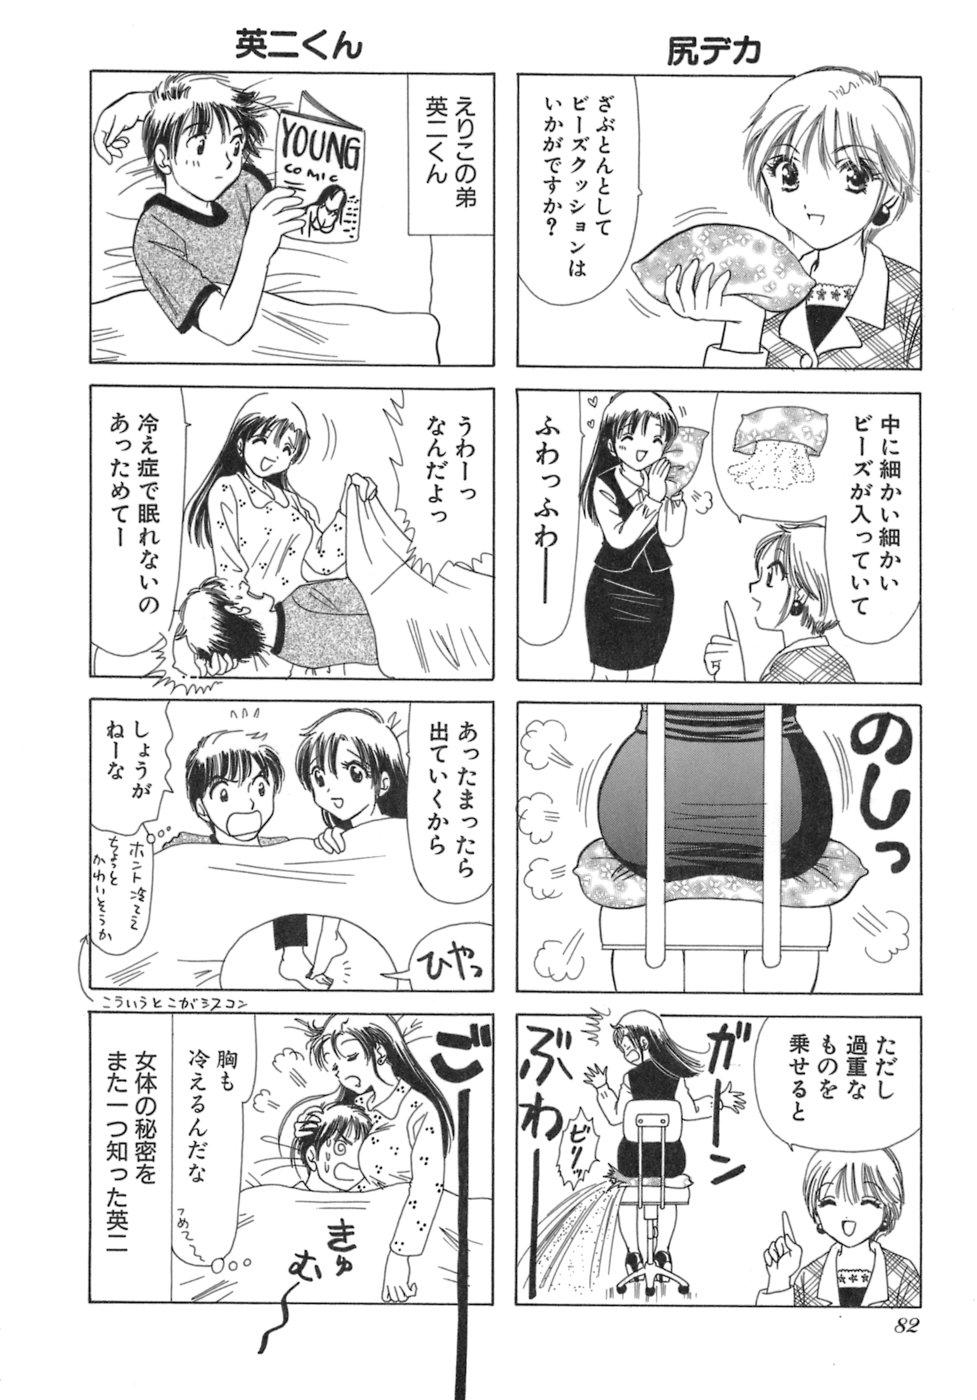 Eriko-kun, Ocha!! Vol.03 84